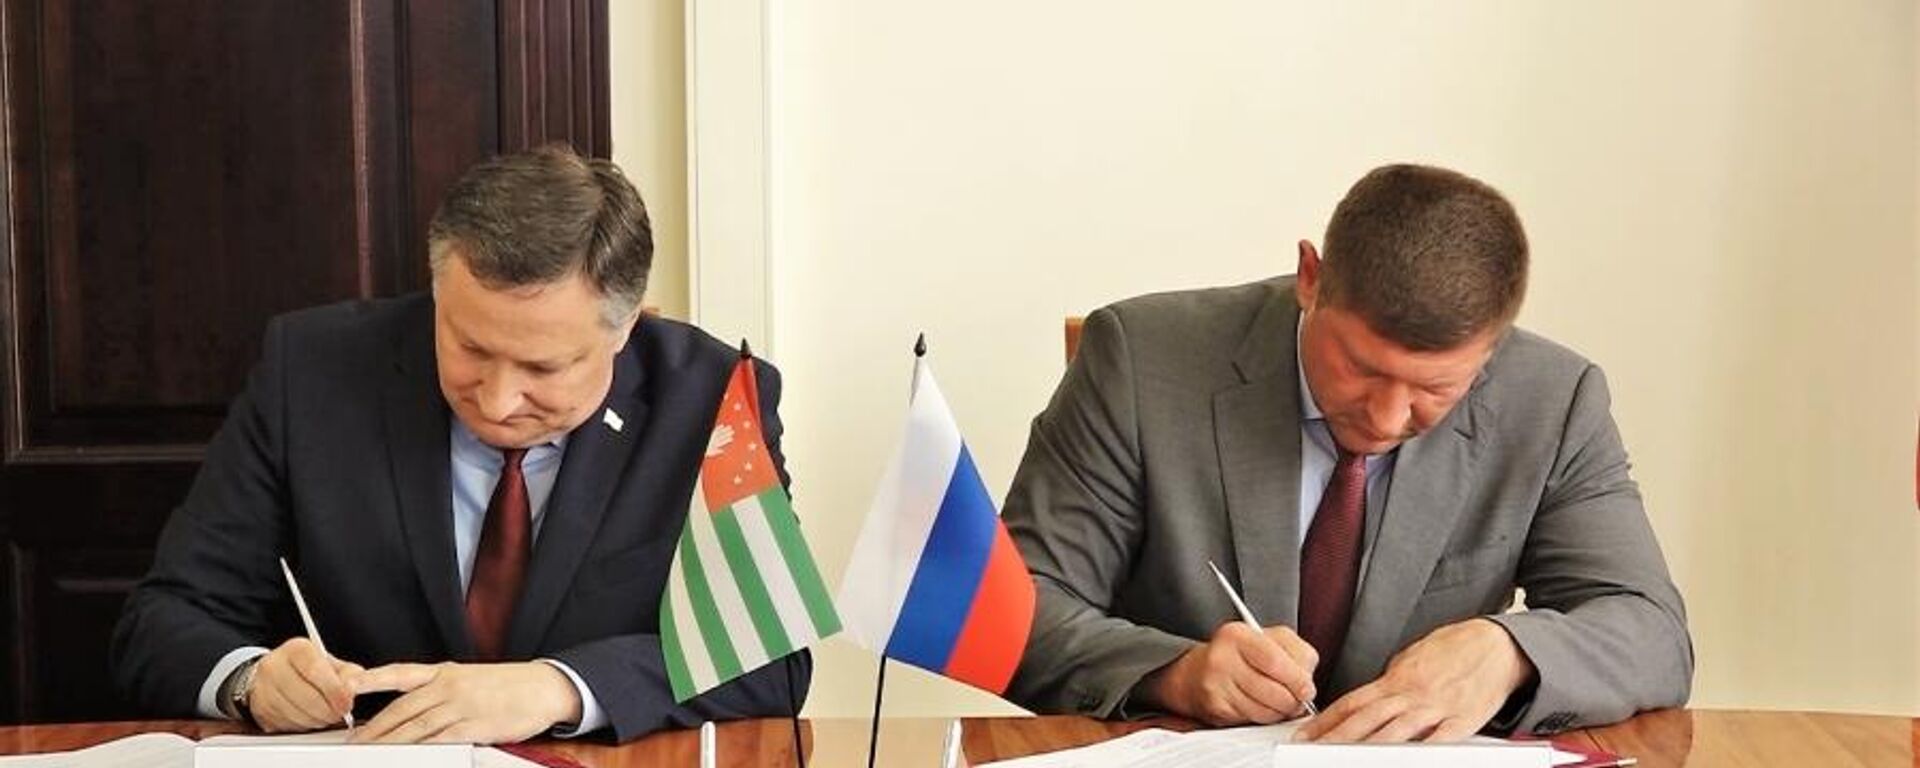 Мэры Сухума и Краснодара подписали соглашение о торжественном подтверждении побратимских связей - Sputnik Абхазия, 1920, 24.06.2022